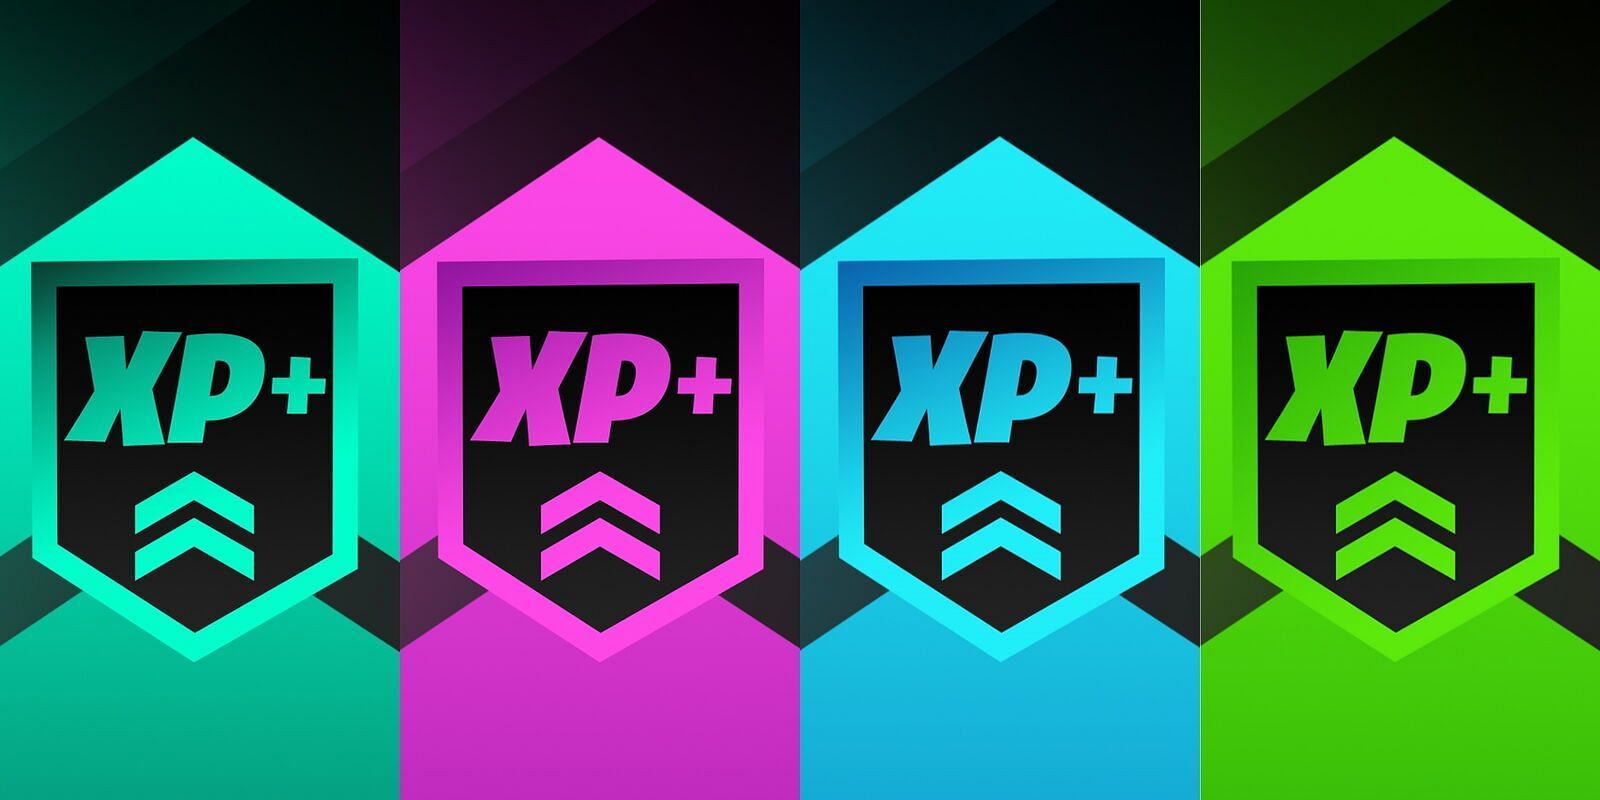 Les cartes XP dans Fortnite sont fantastiques pour augmenter les niveaux de compte (Image via Epic Games)